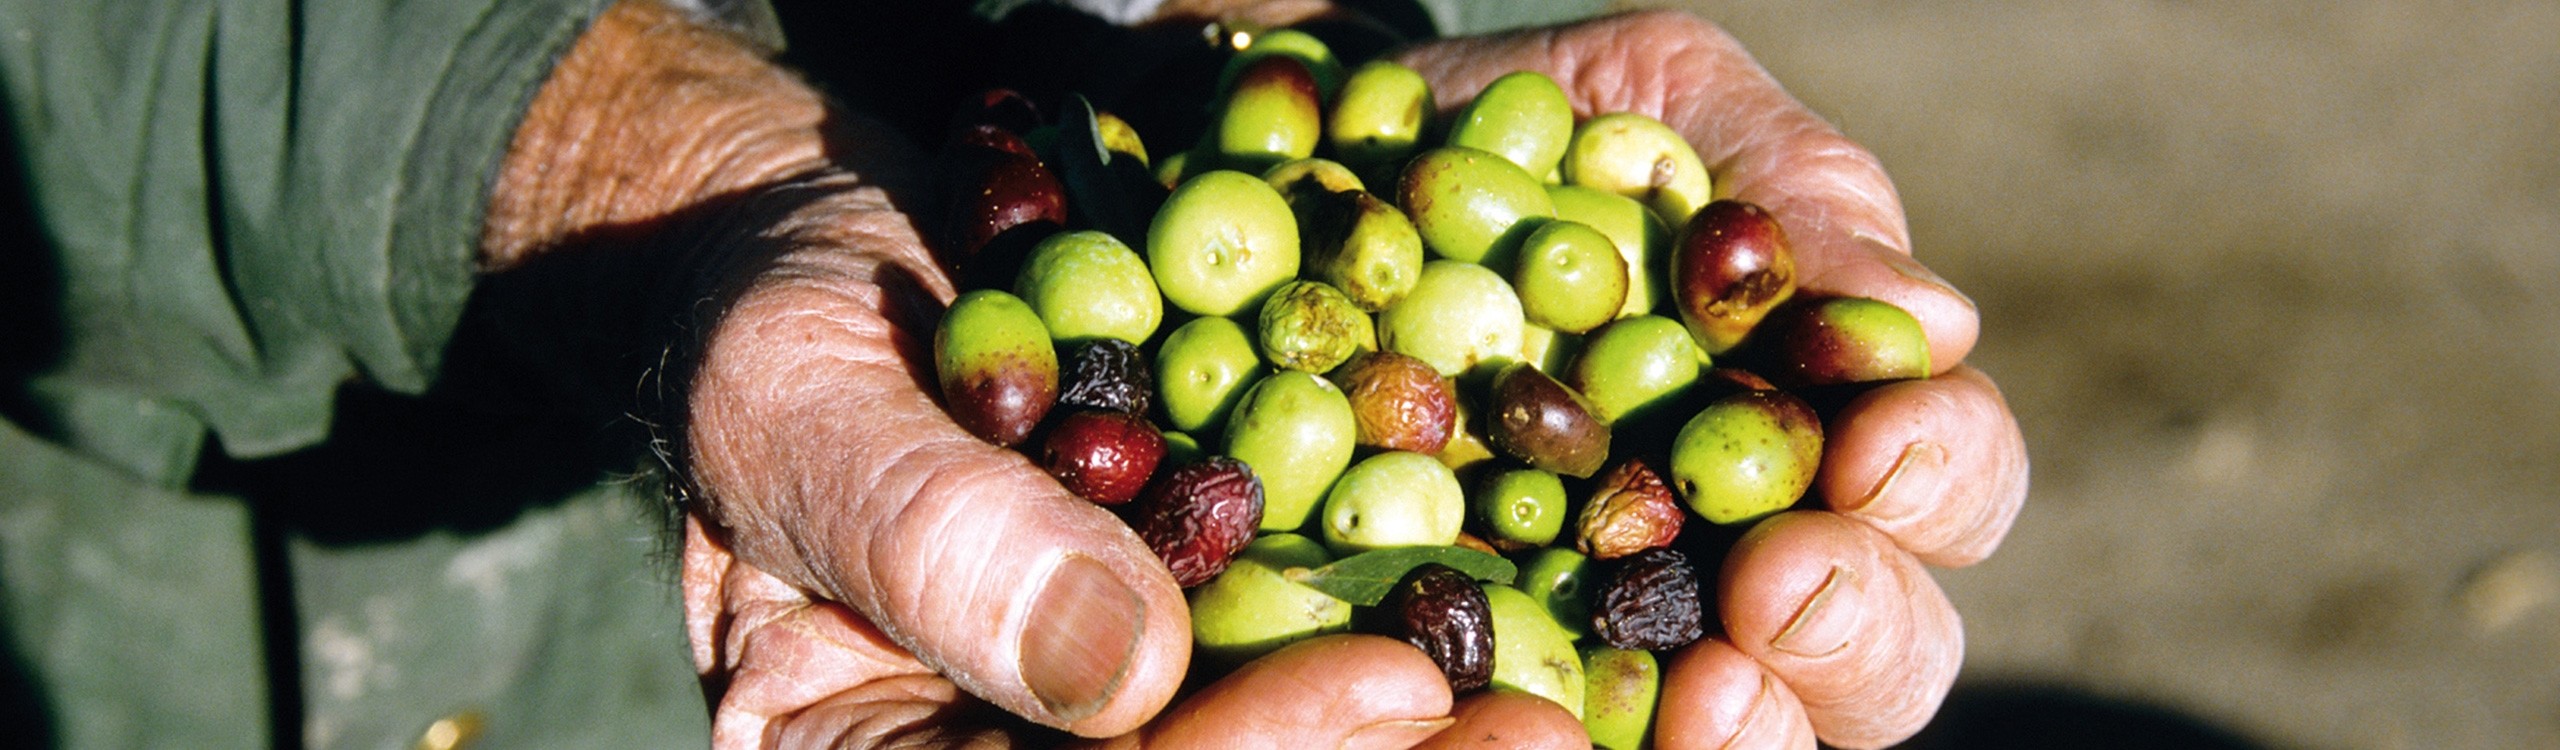 boutique huile d'olive : accessoires bois d'olivier